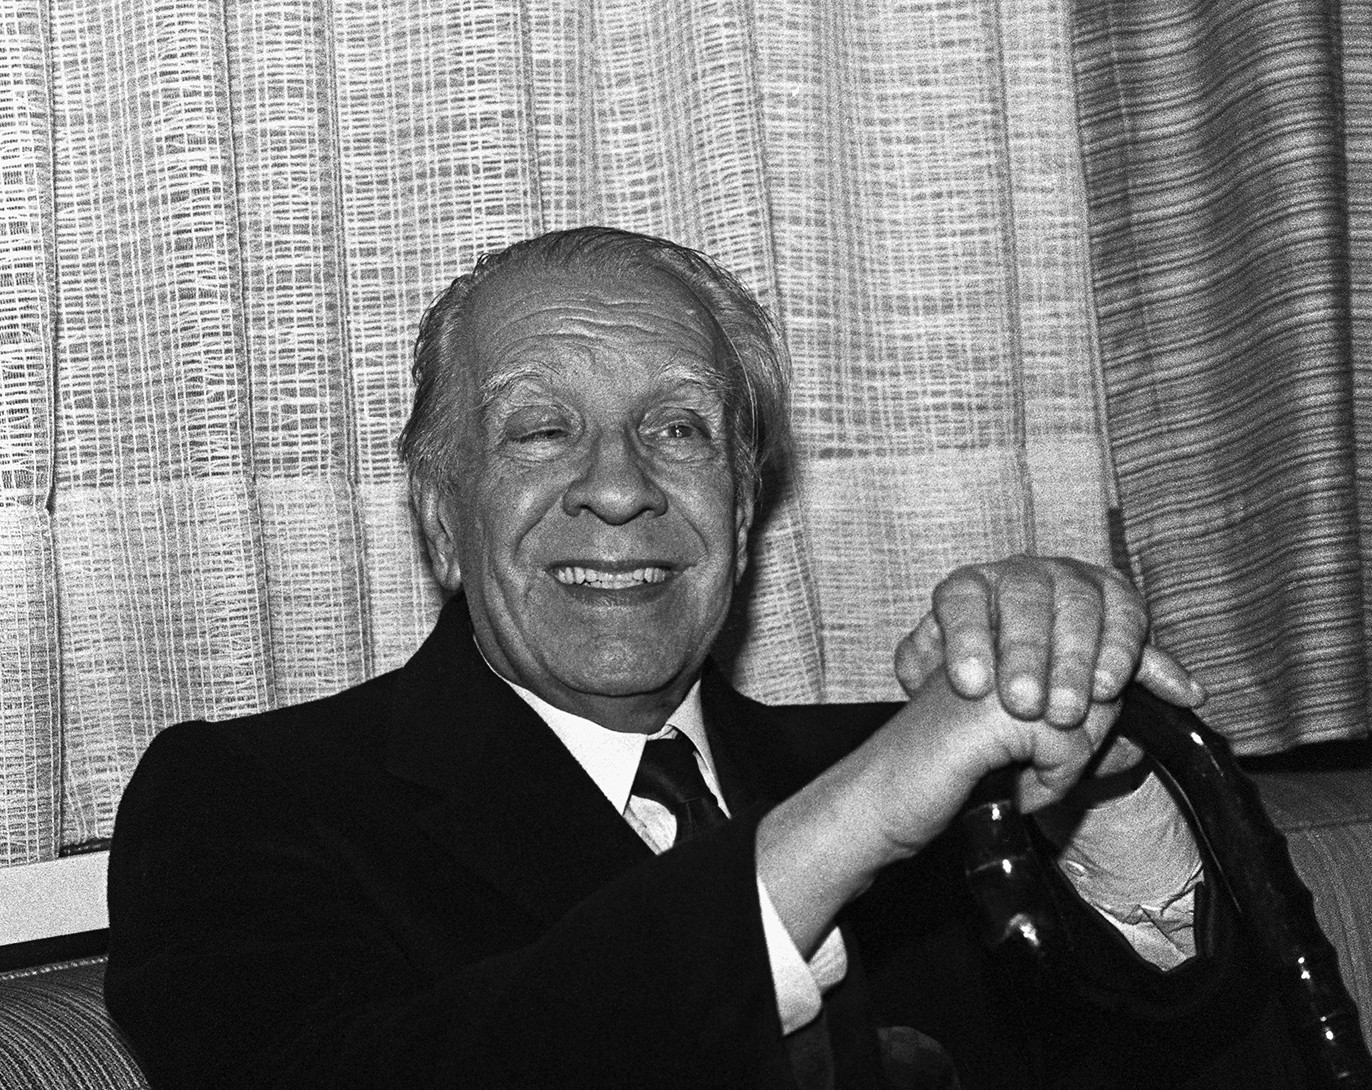 Jorge Luis Borges & the plural I